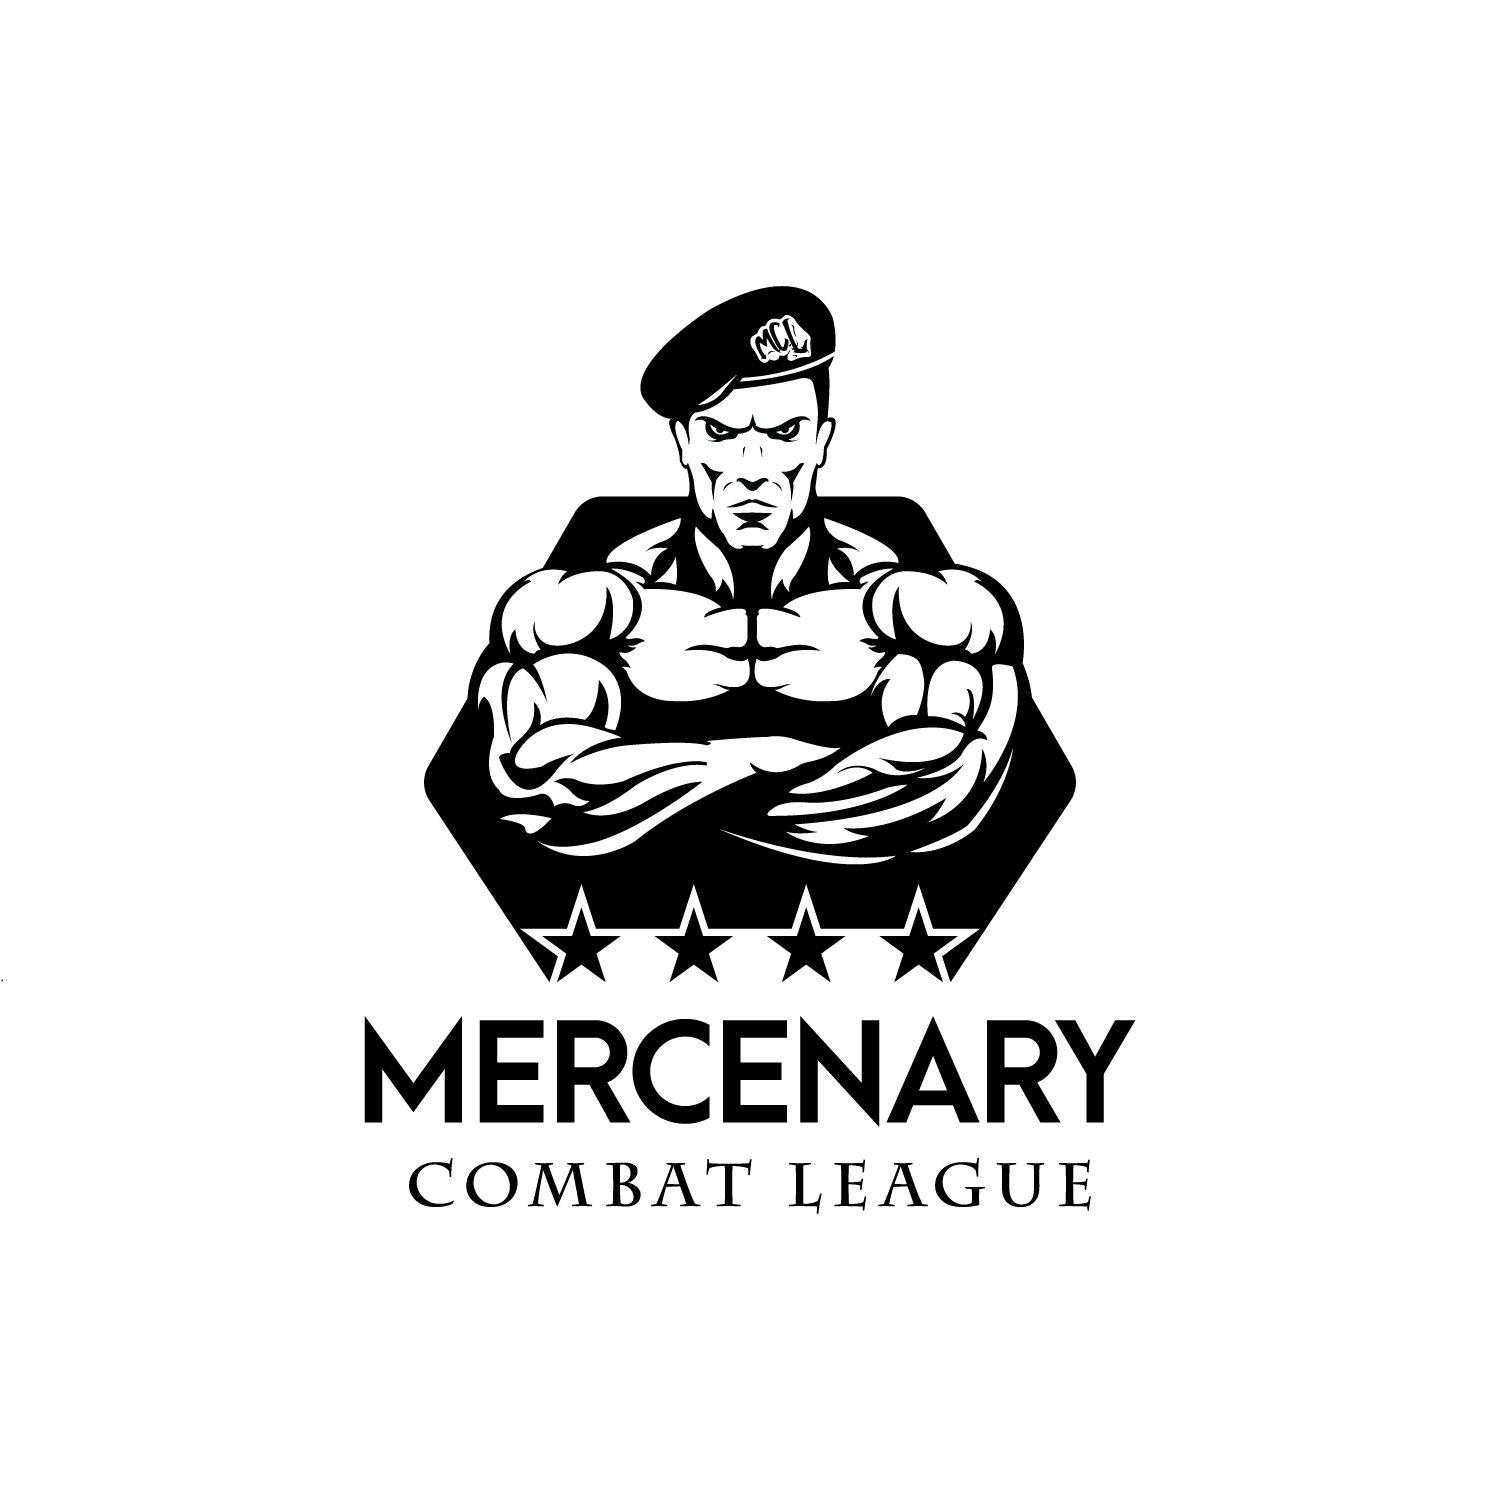 Mercenary Logo - Masculine, Bold, Entertainment Logo Design for MCL or Mercenary ...